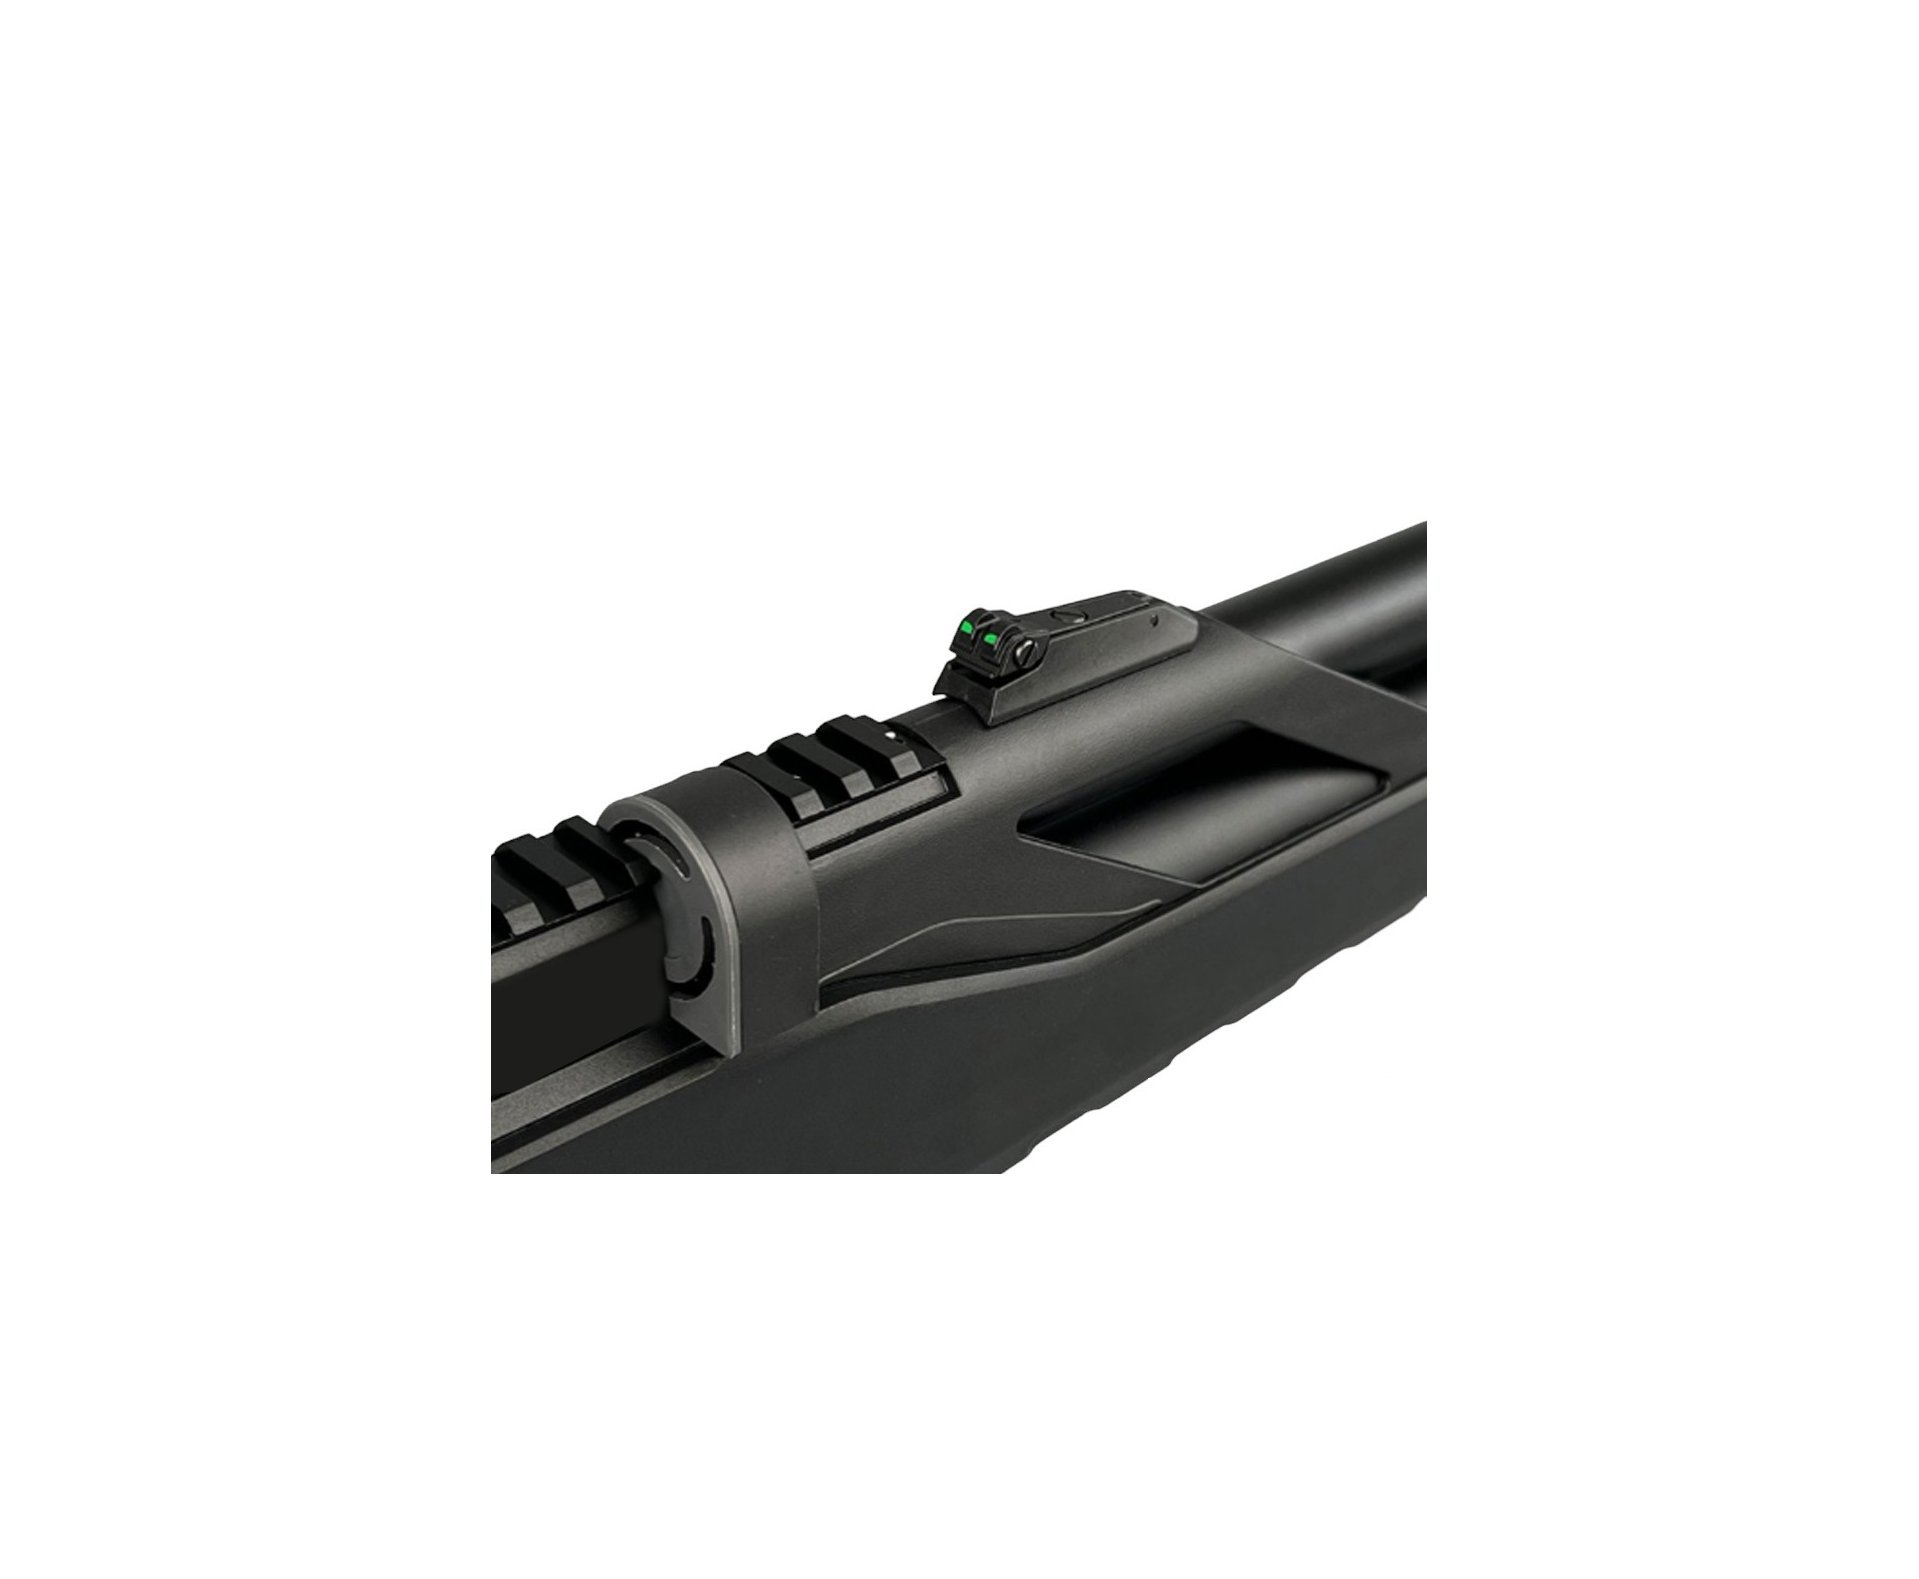 Carabina de Pressão PCP Artemis T-REX 5.5mm com Válvula Reguladora - Fixxar + Luneta 4-16x50 + Mount